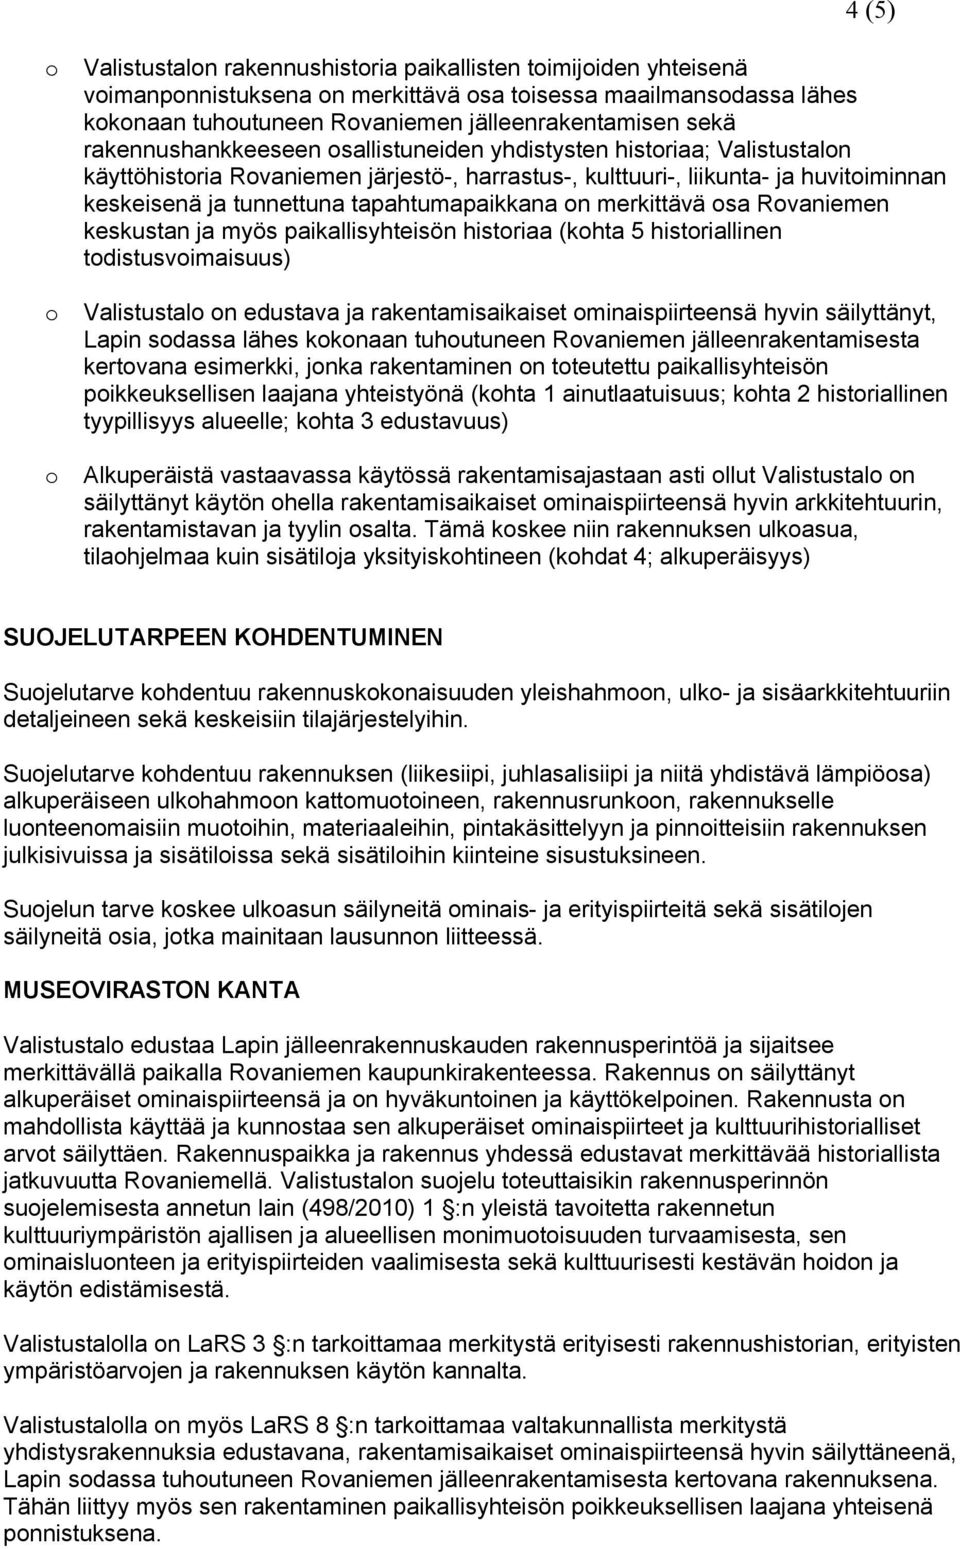 tapahtumapaikkana on merkittävä osa Rovaniemen keskustan ja myös paikallisyhteisön historiaa (kohta 5 historiallinen todistusvoimaisuus) o Valistustalo on edustava ja rakentamisaikaiset